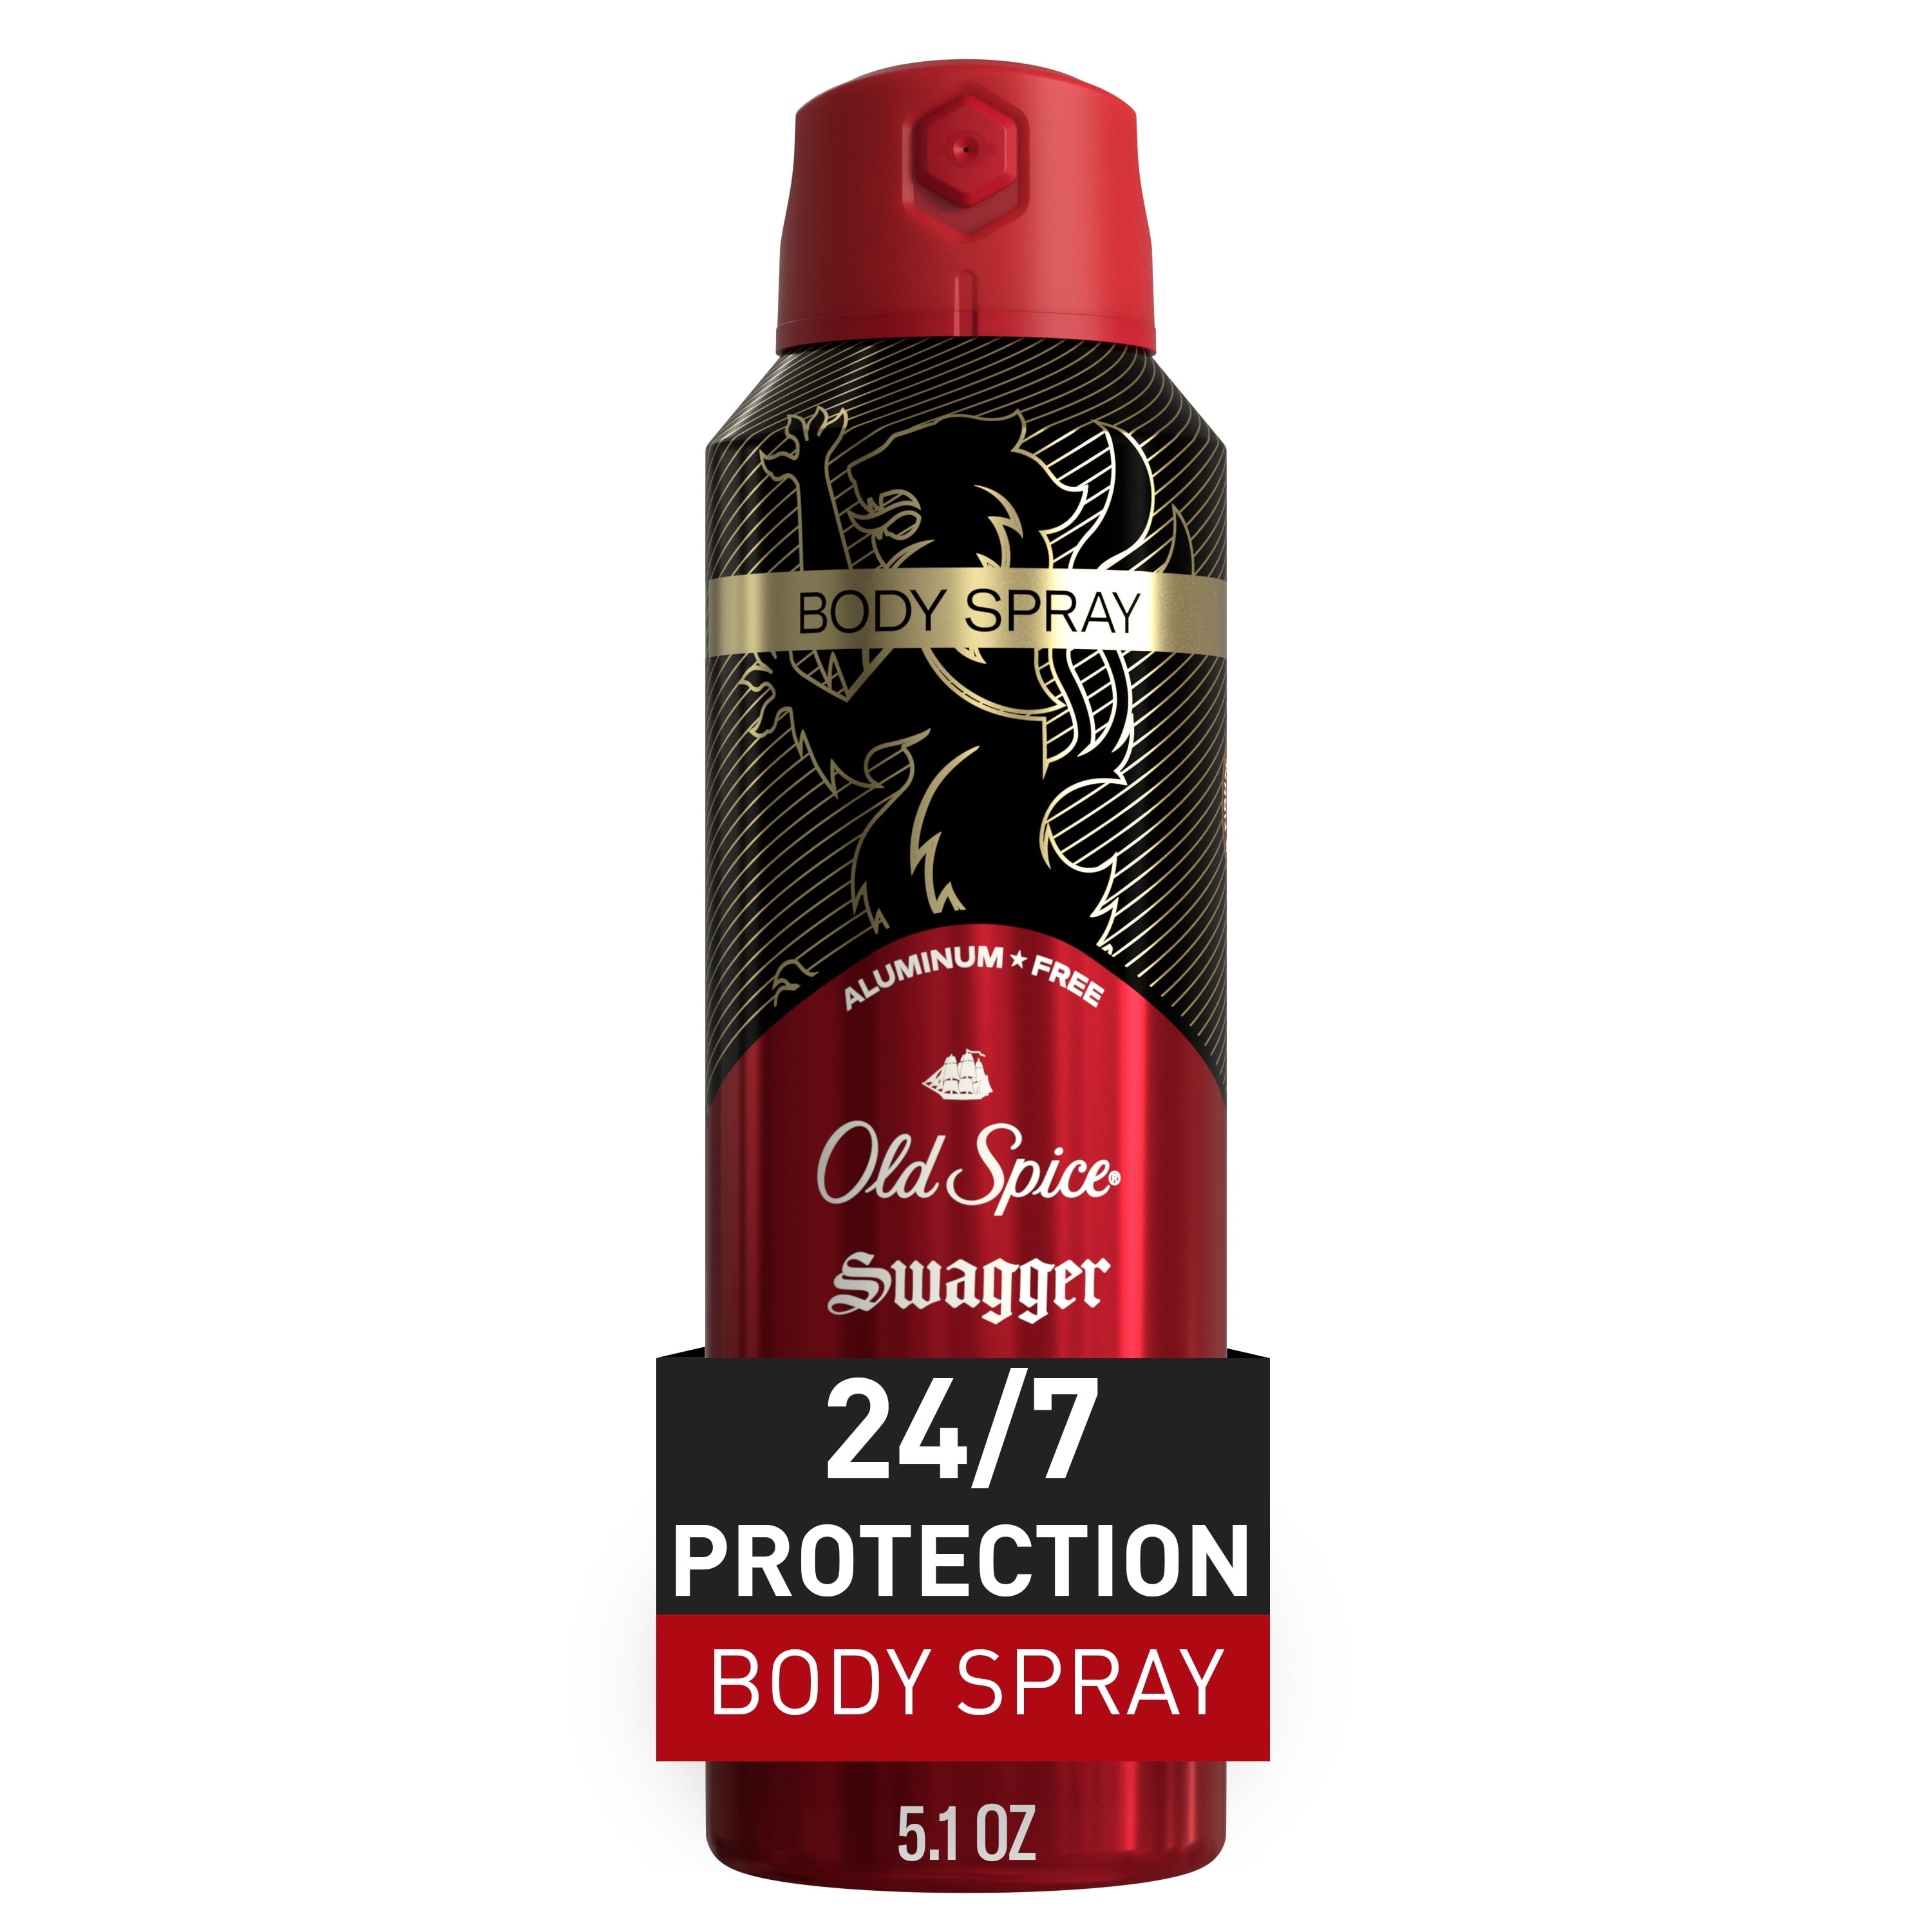 Secret Whole Women's Body Aluminum Free Deodorant Clear Cream Peach &  Vanilla 3.0oz